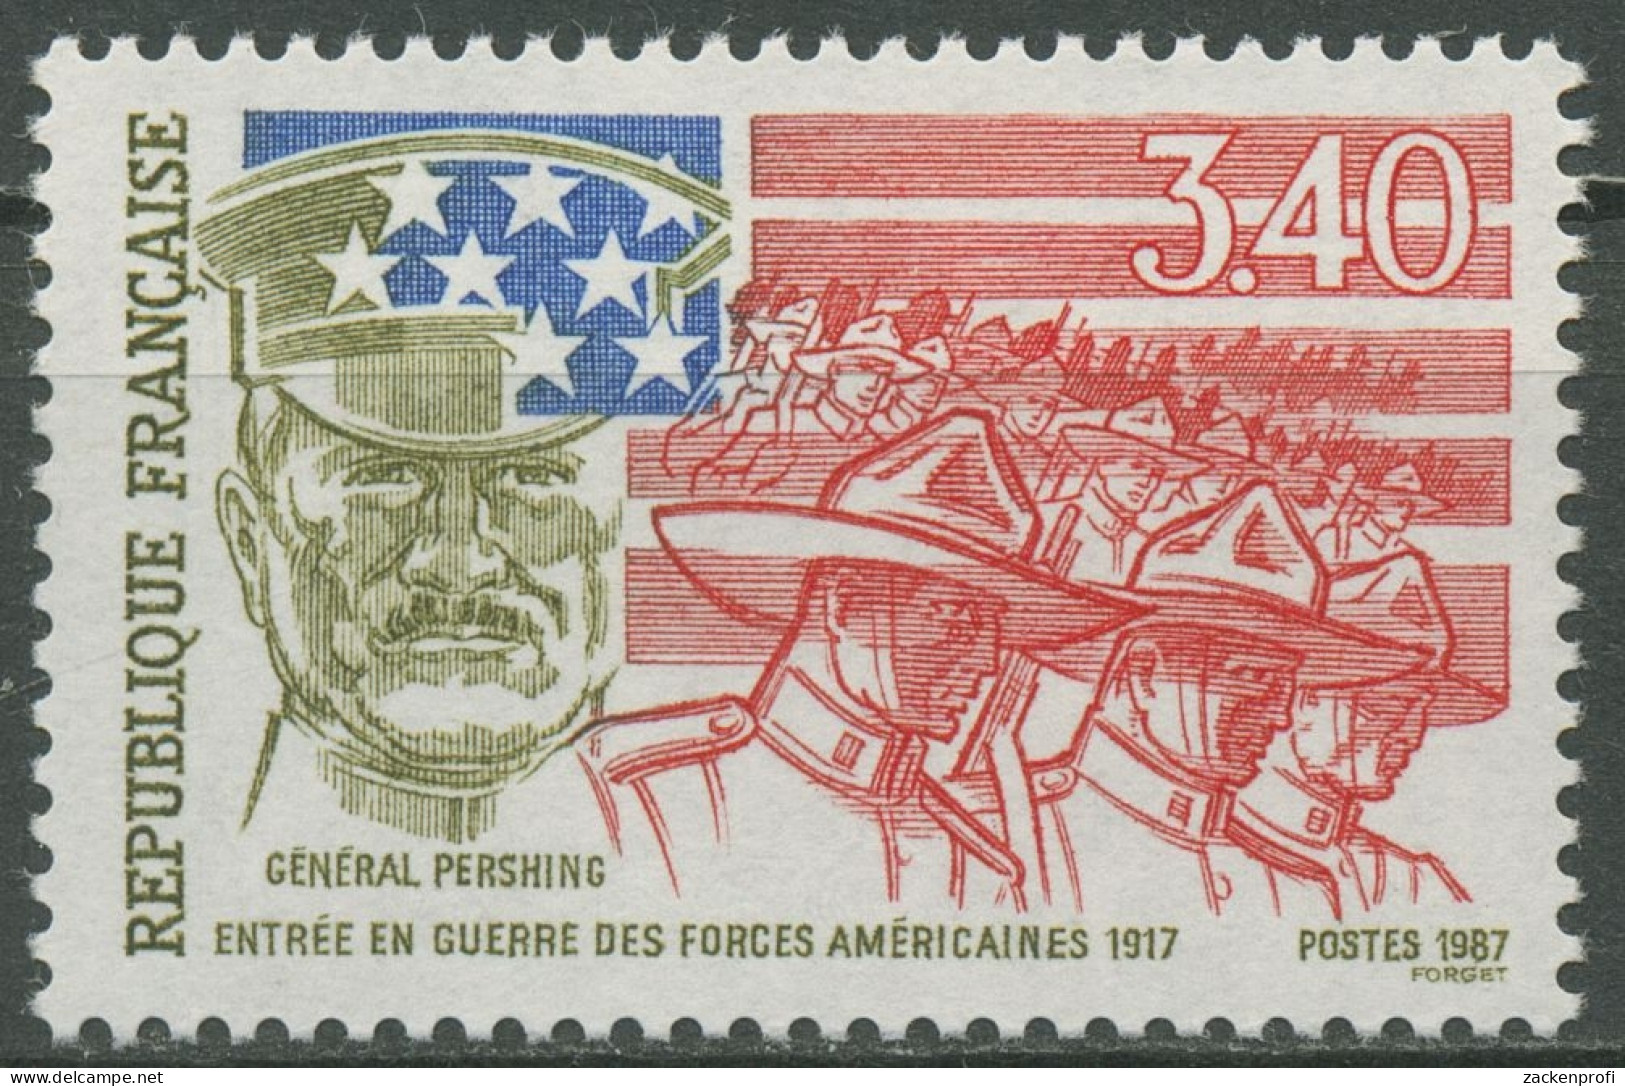 Frankreich 1987 USA Beginn Erster Weltkrieg 2612 Postfrisch - Unused Stamps